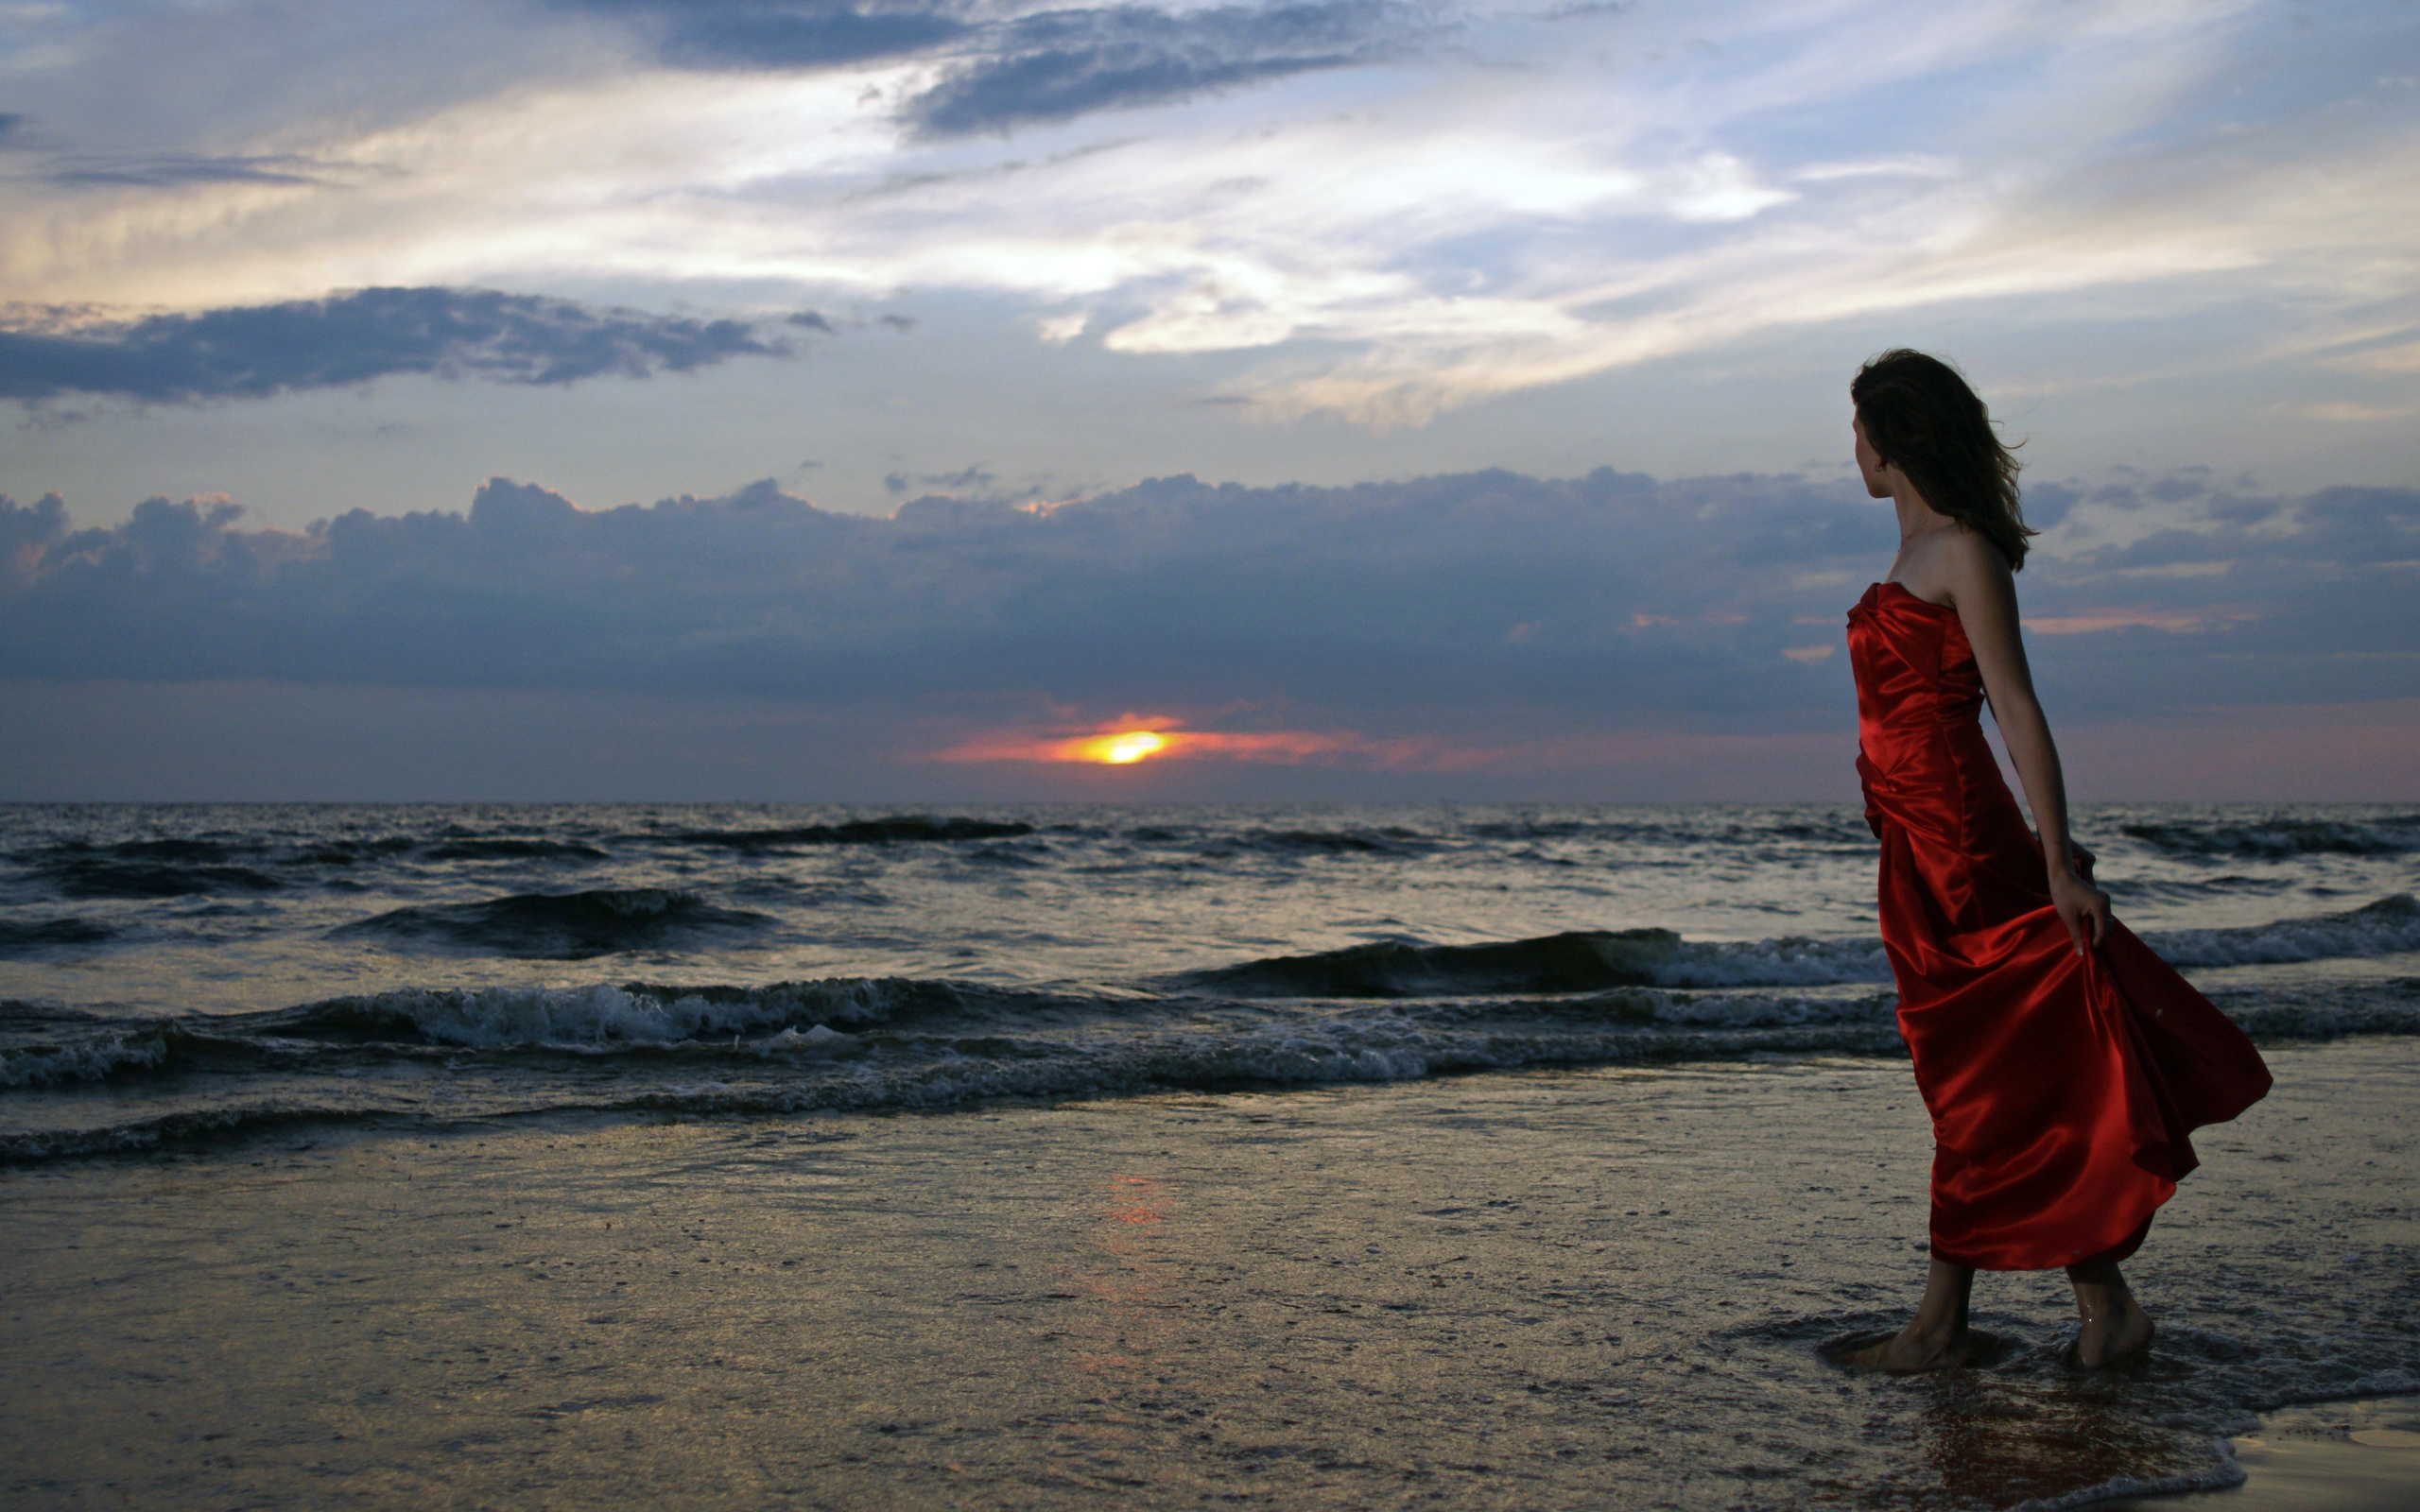 На фото красивая голая девчонка скучает у побережья